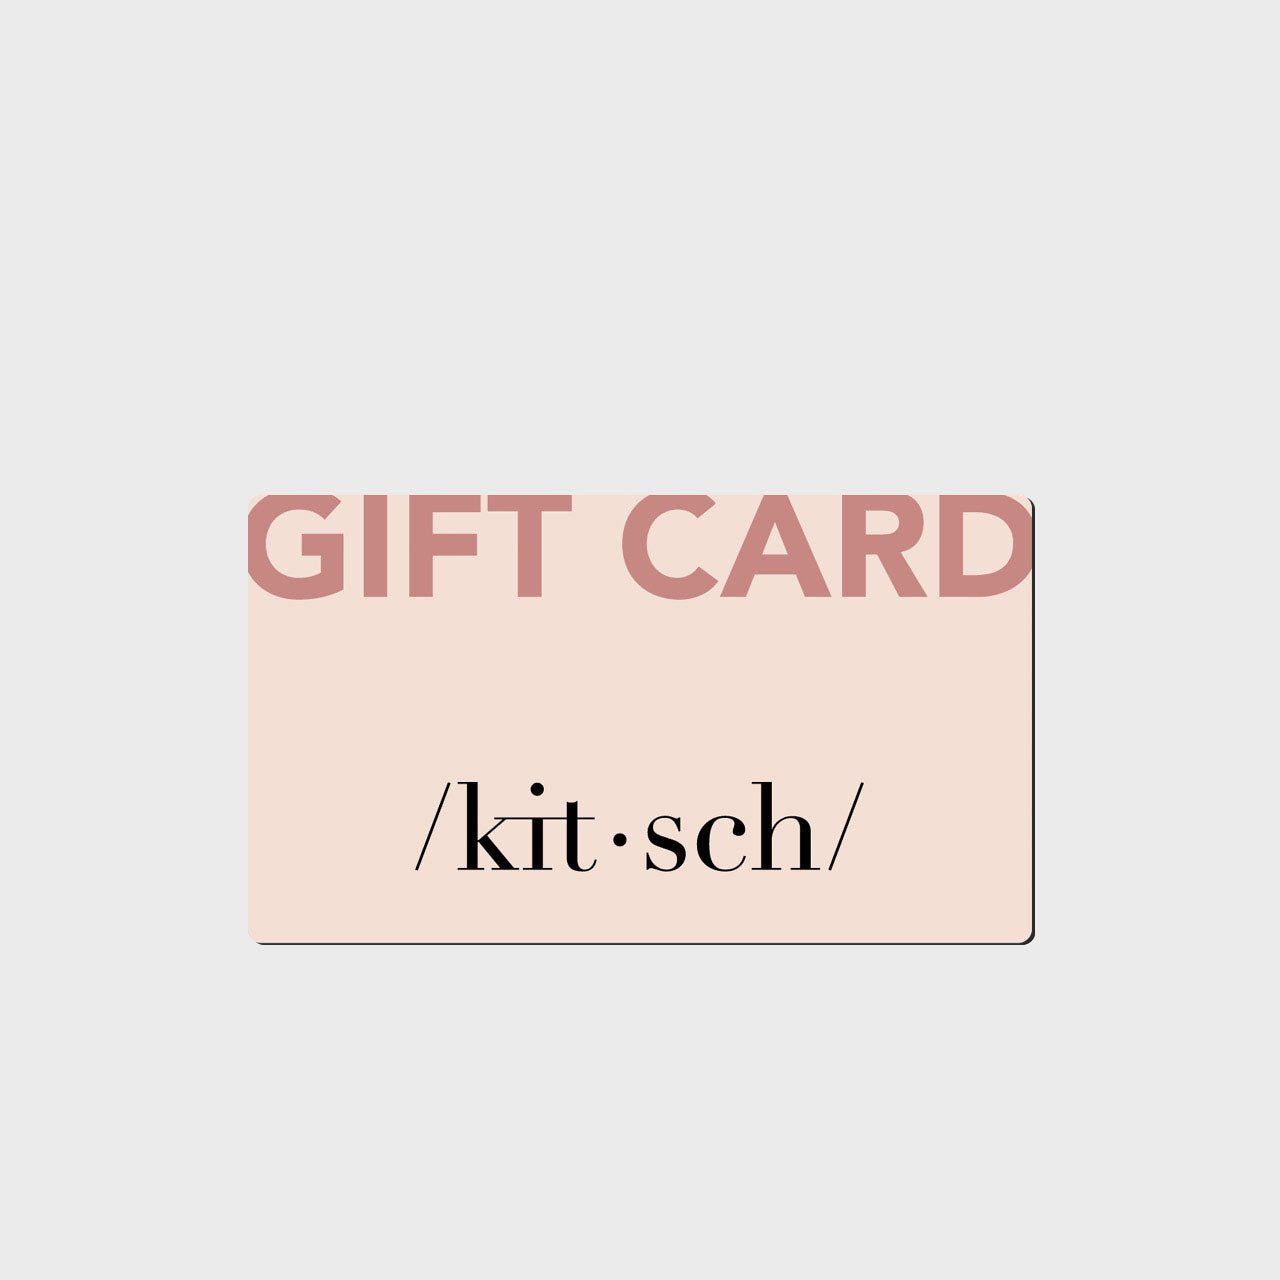 Kitsch Gift Card